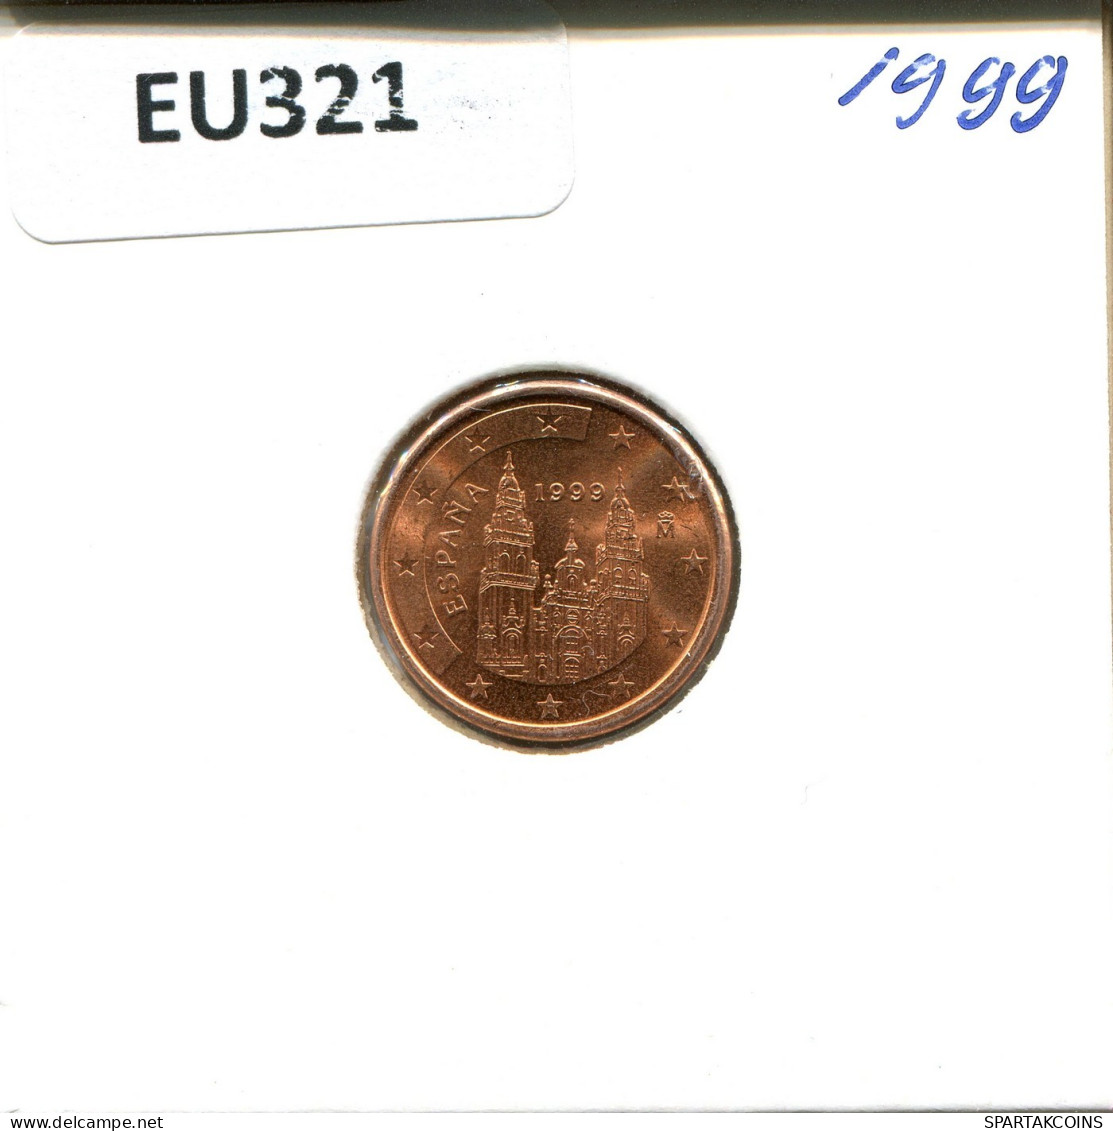 1 EURO CENT 1999 SPANIEN SPAIN Münze #EU321.D.A - España